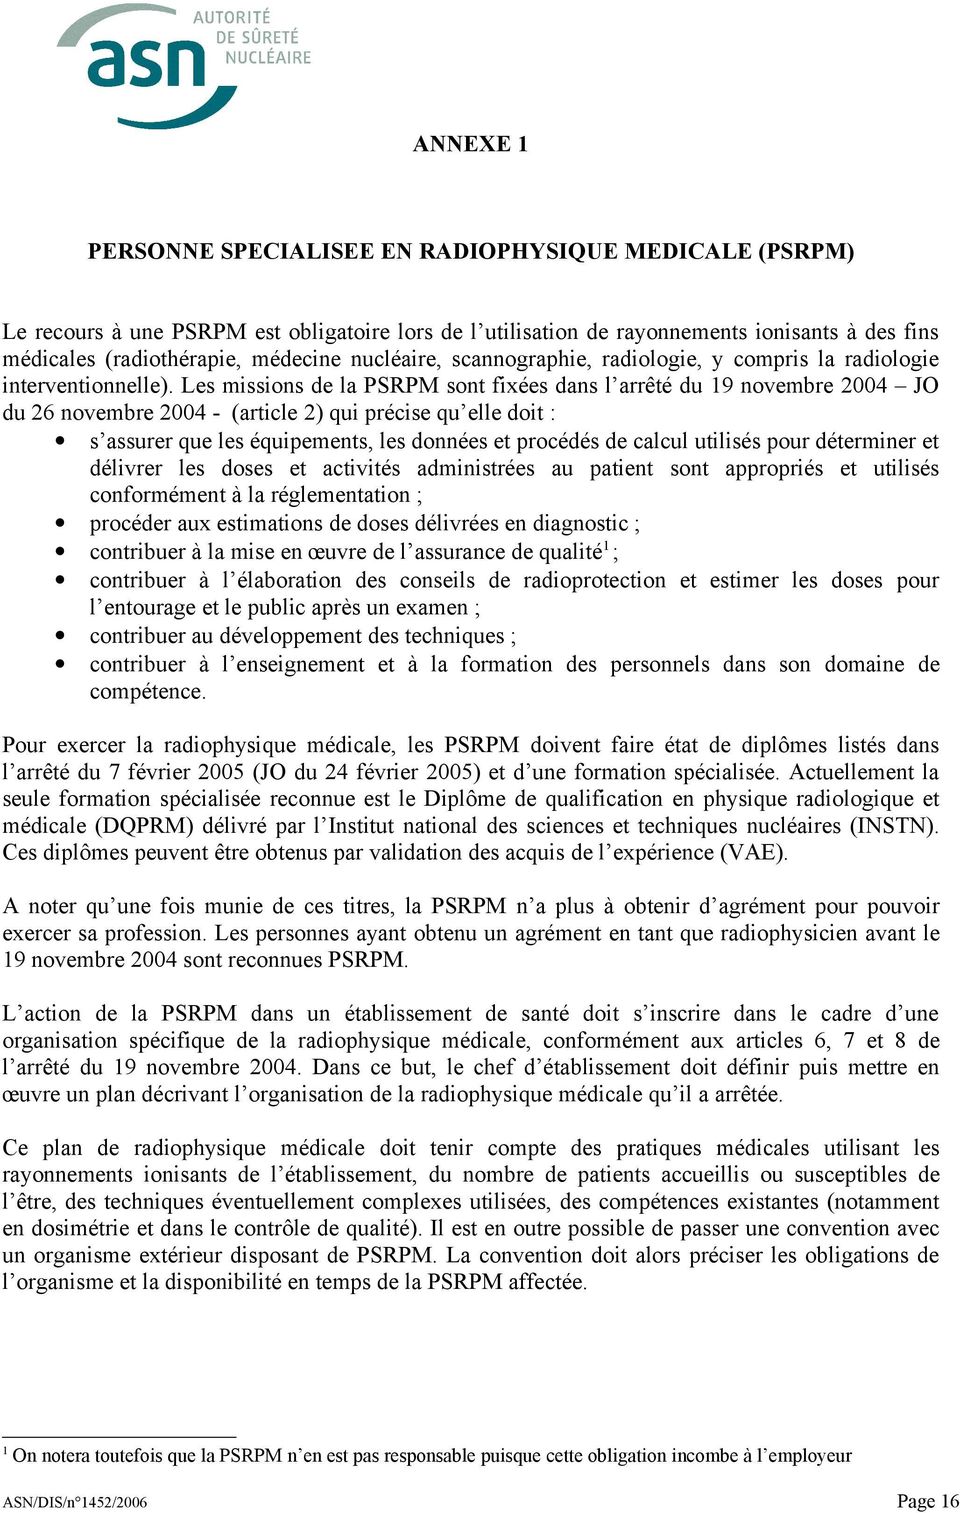 Les missions de la PSRPM sont fixées dans l arrêté du 19 novembre 2004 JO du 26 novembre 2004 - (article 2) qui précise qu elle doit : s assurer que les équipements, les données et procédés de calcul